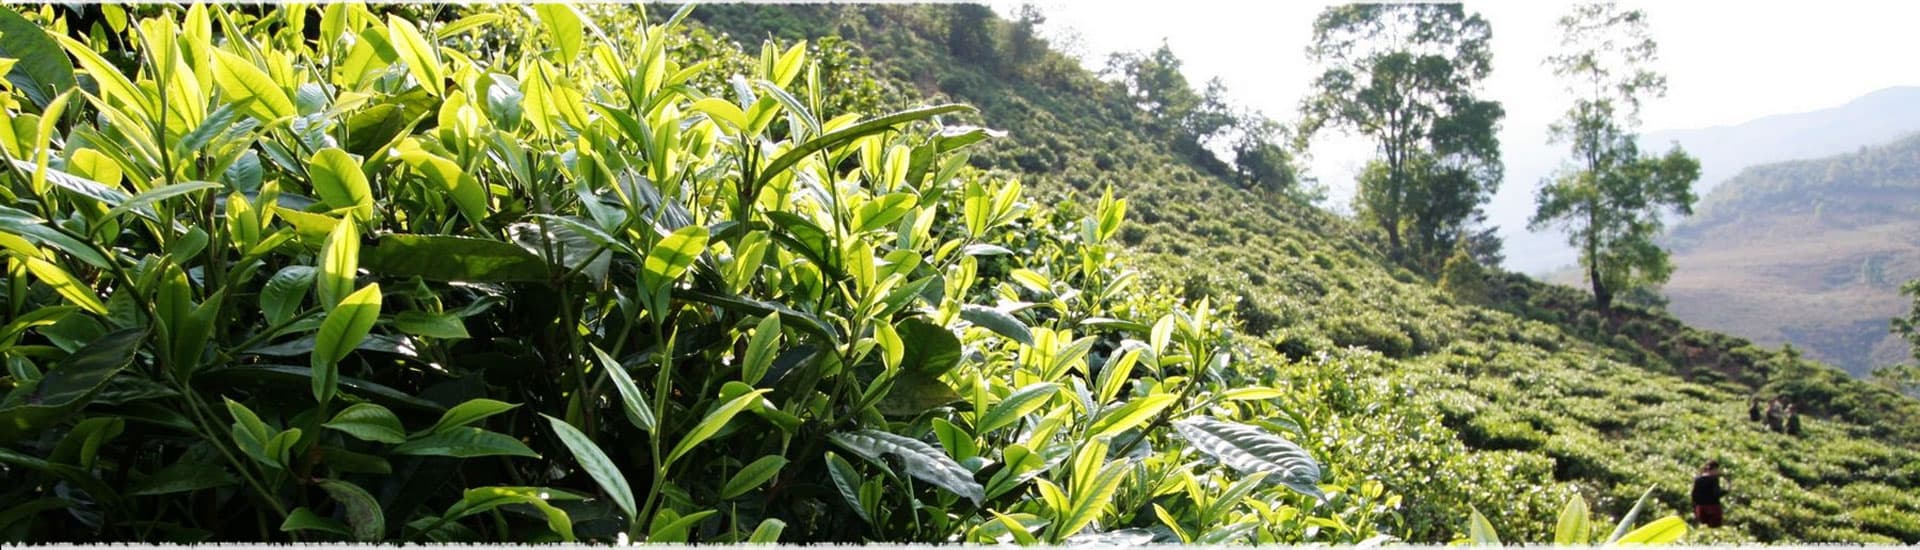 Wu Jia Cun Tea Garden